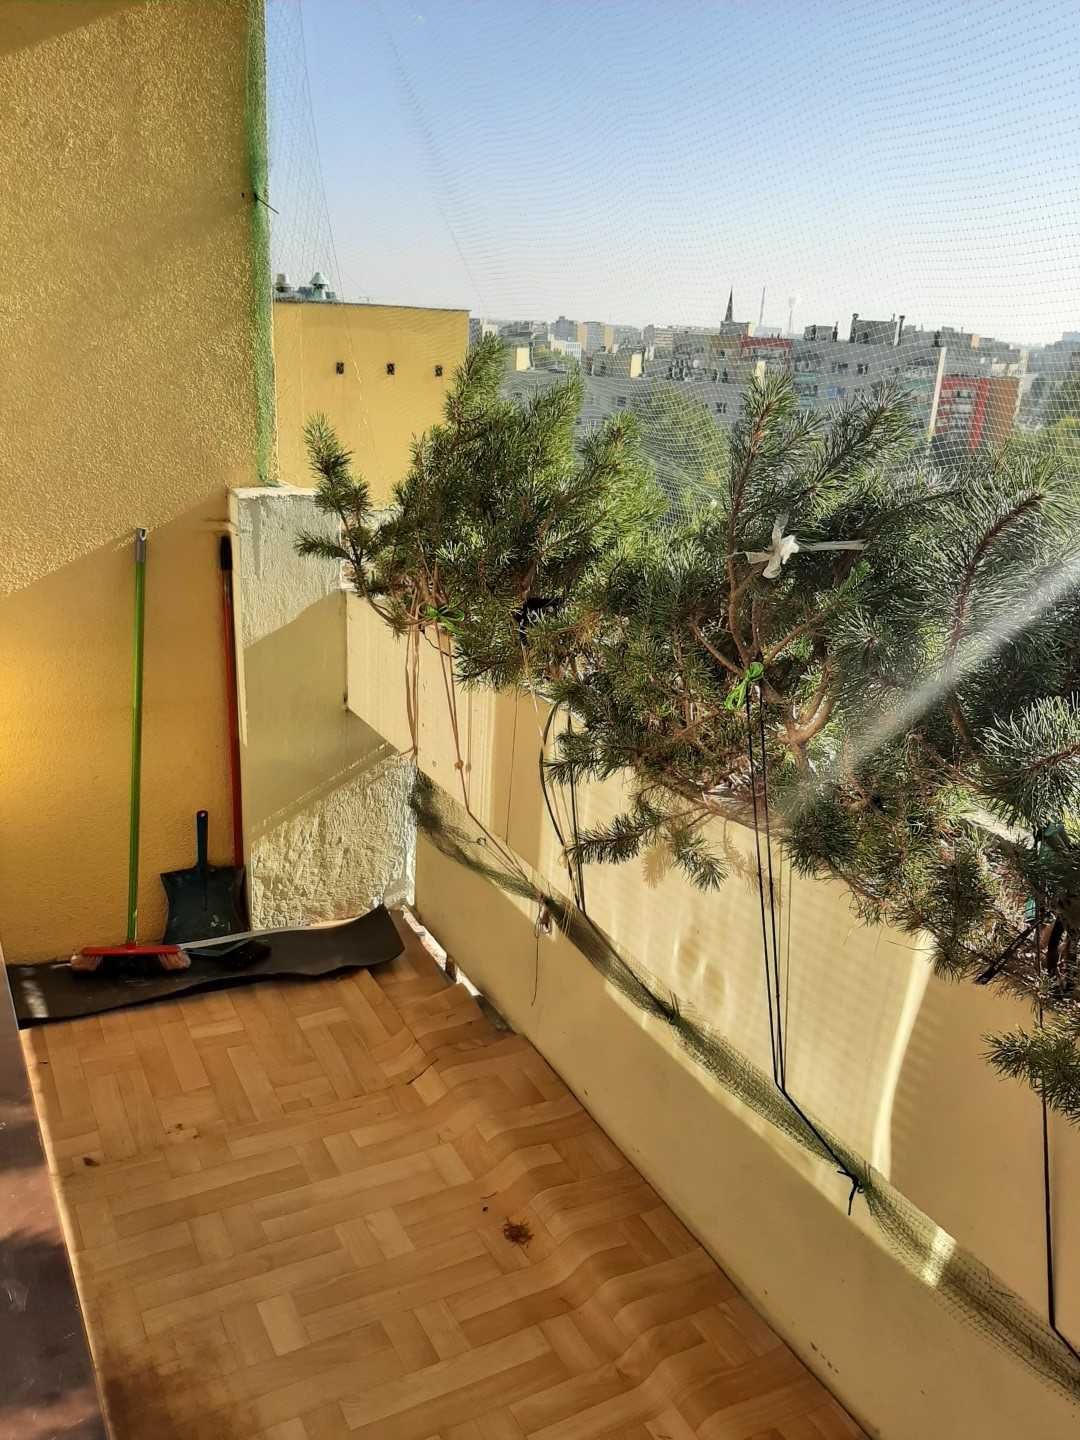 Wynajmę mieszkanie na ul. Hynka, 47 m2, balkon, 1950 zł